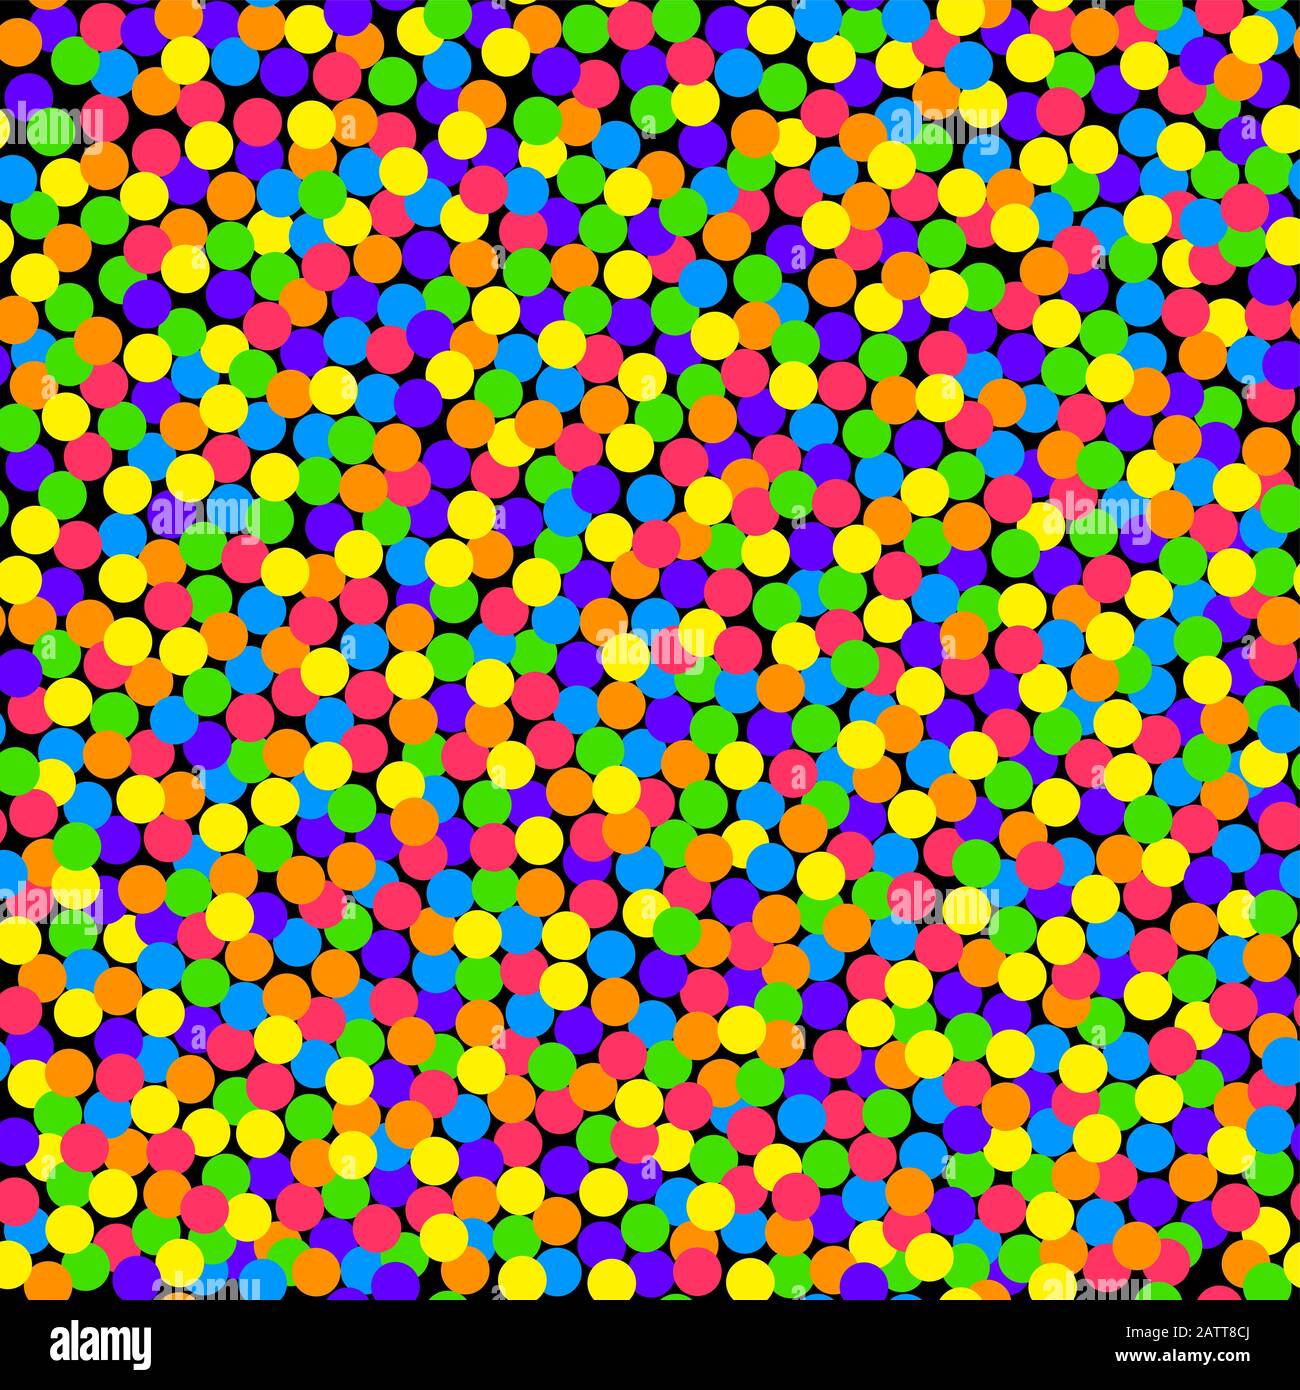 Fond confettis coloré, carrelage sans couture. Petits points en couleurs vives et saturées, répartis de manière aléatoire sur un fond noir en forme de carré. Banque D'Images